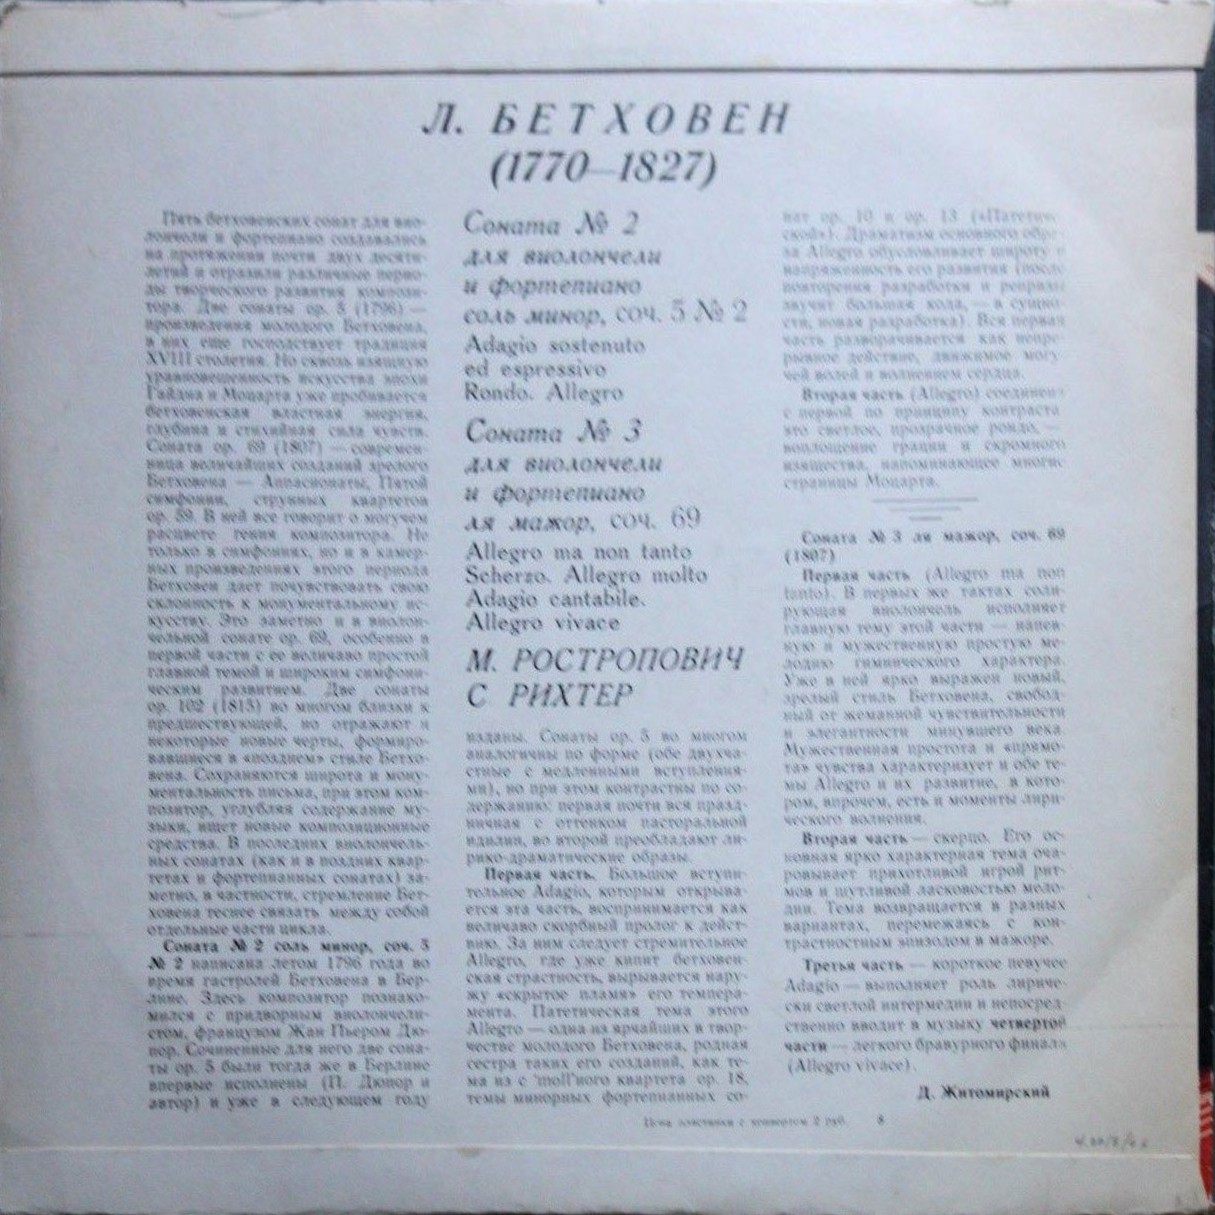 Л. Бетховен: Сонаты № 2, 3 для виолончели и ф-но (М. Ростропович, С. Рихтер)